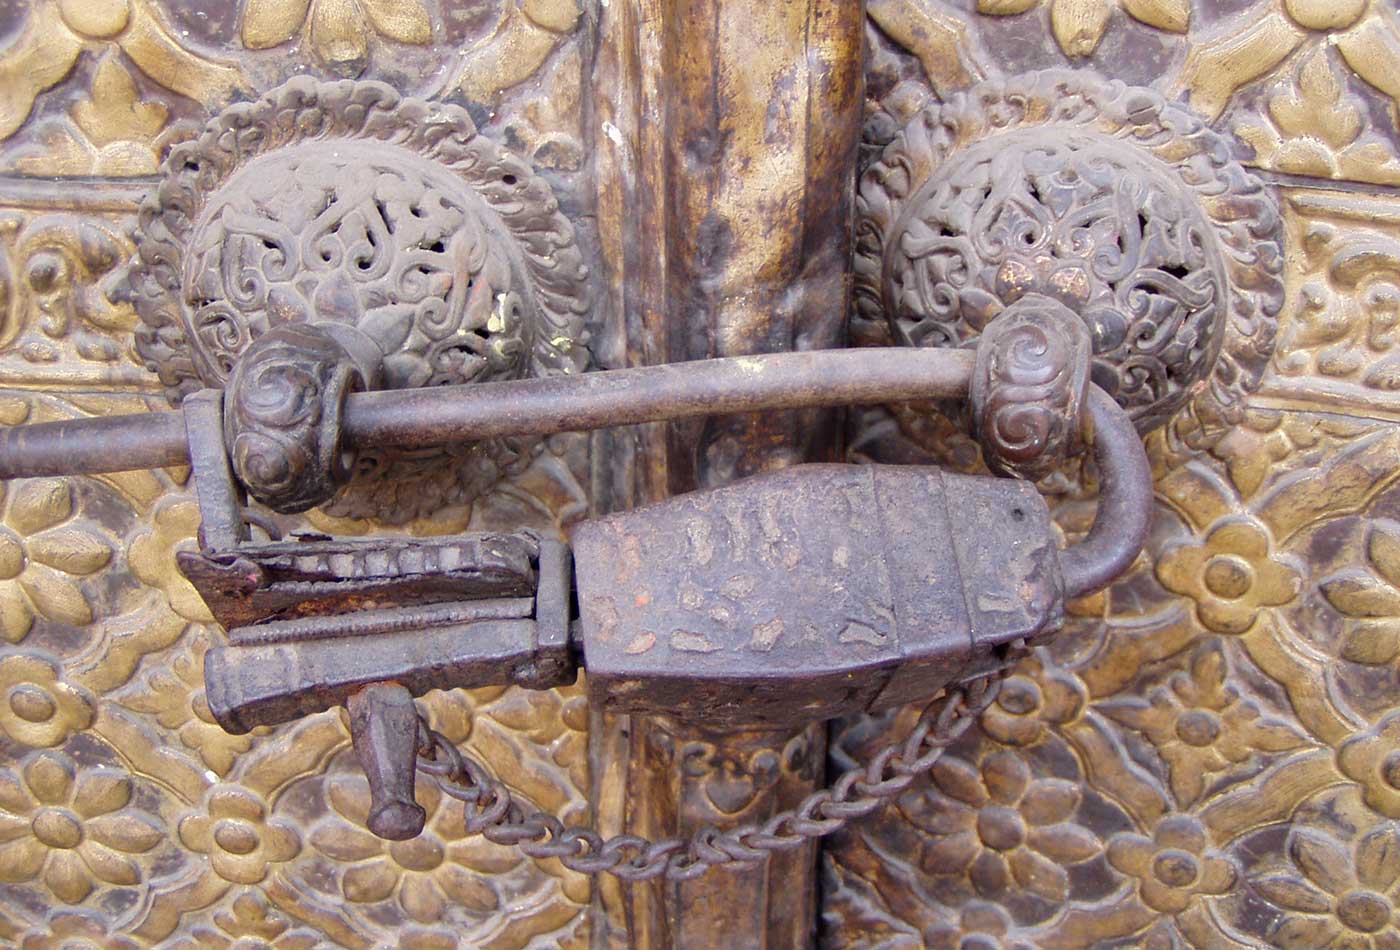 Medieval padlock in a Hindu temple in Kathmandu, Nepal.